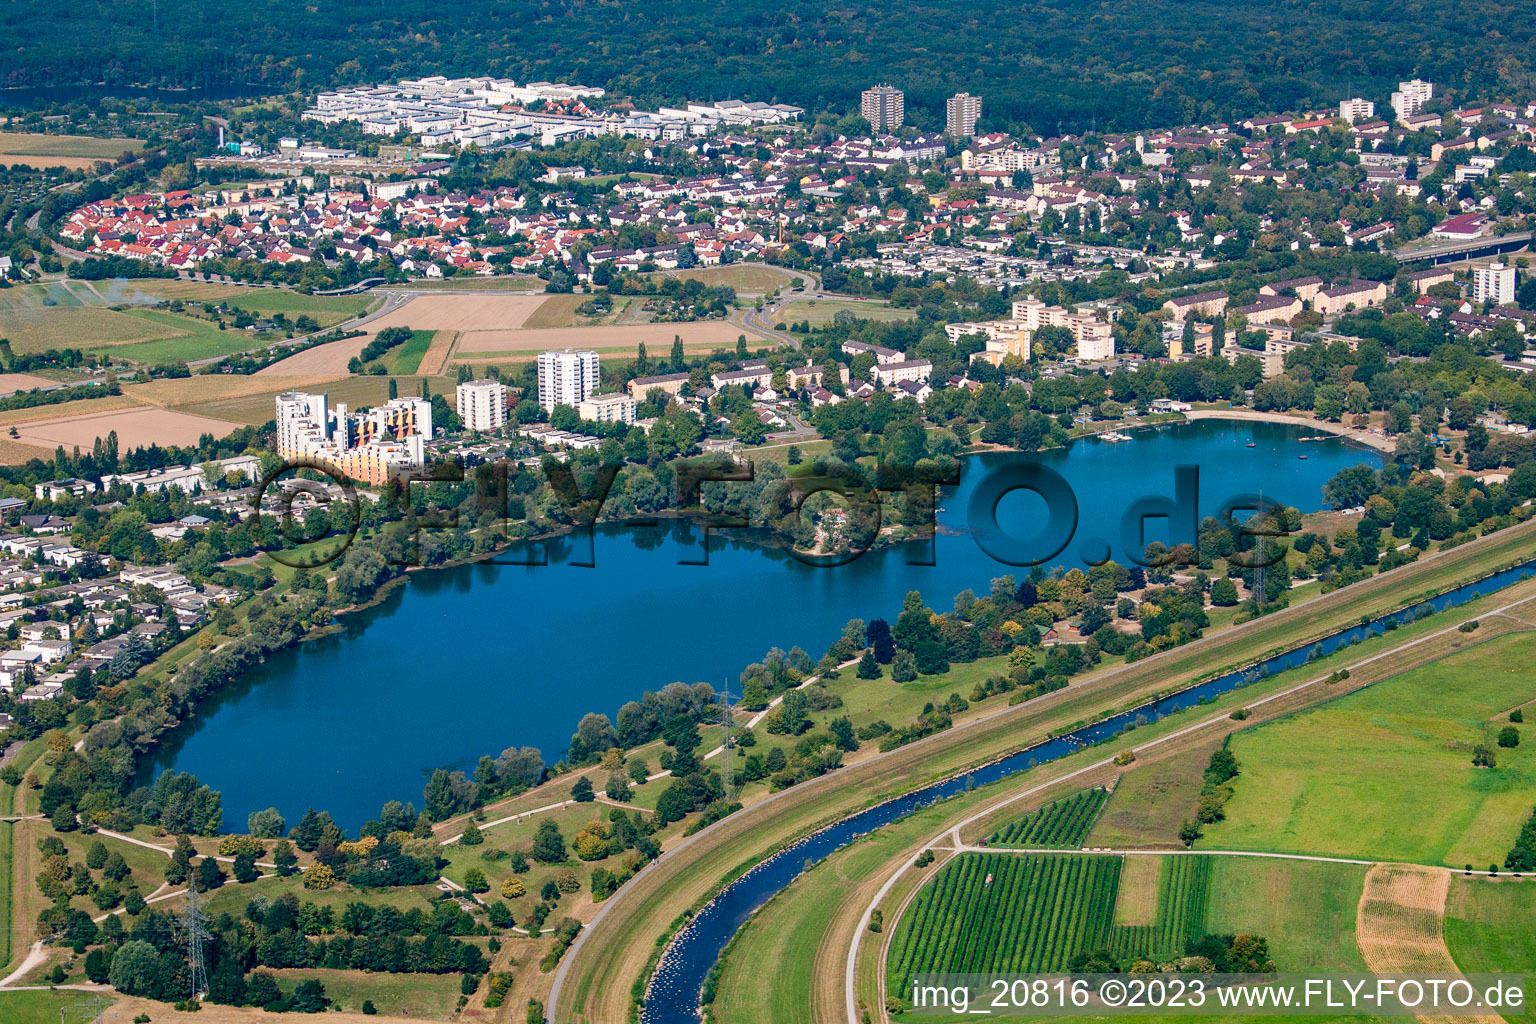 Vue aérienne de Quartier Uffhofen in Offenburg dans le département Bade-Wurtemberg, Allemagne